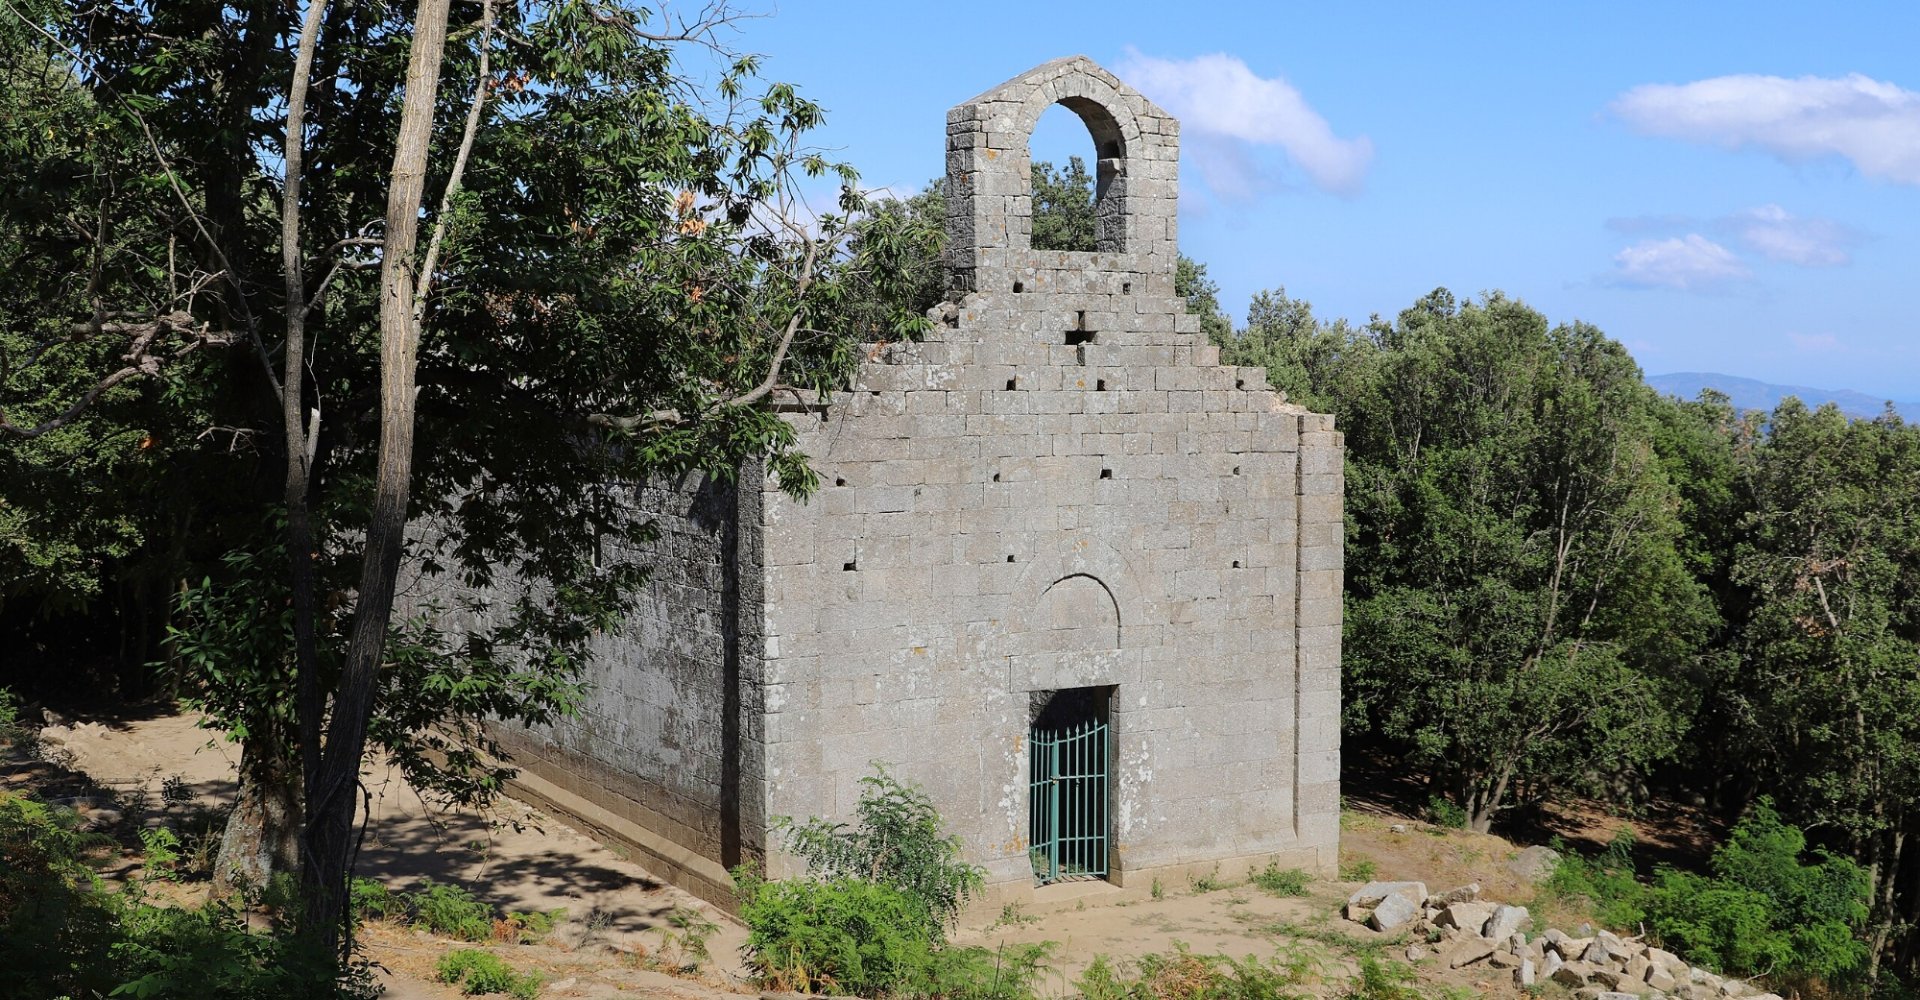 Pieve di San Giovanni Battista, Campo nell'Elba